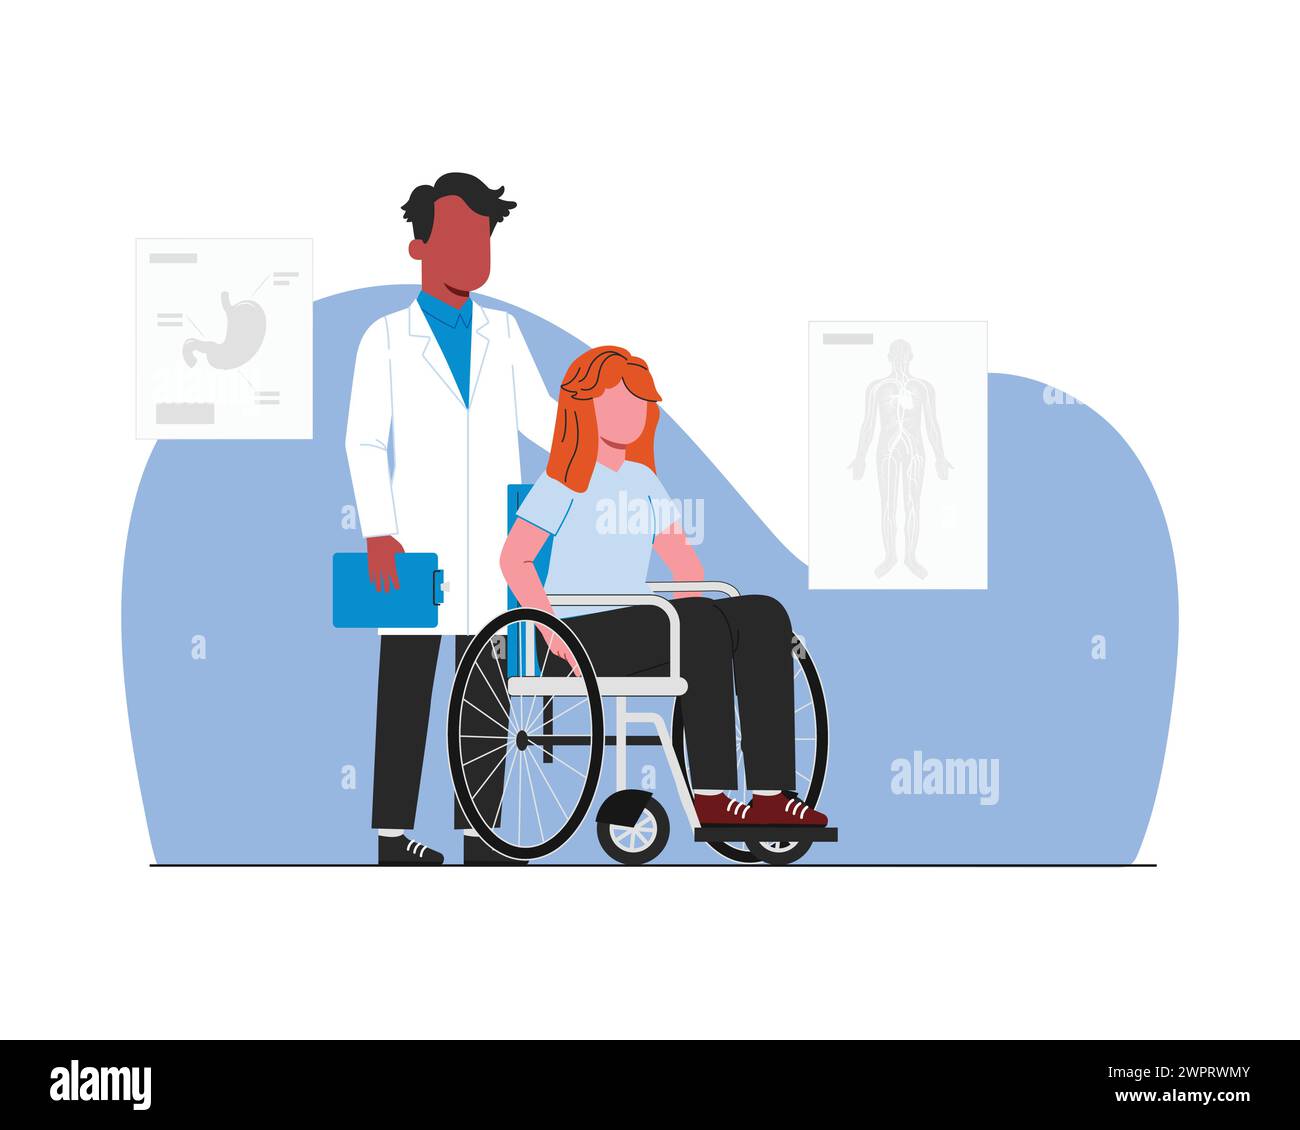 Patient im Rollstuhl mit Arzt. Vektor-Illustration in flacher Art für Gesundheitspflege und medizinisches Thema. Stock Vektor